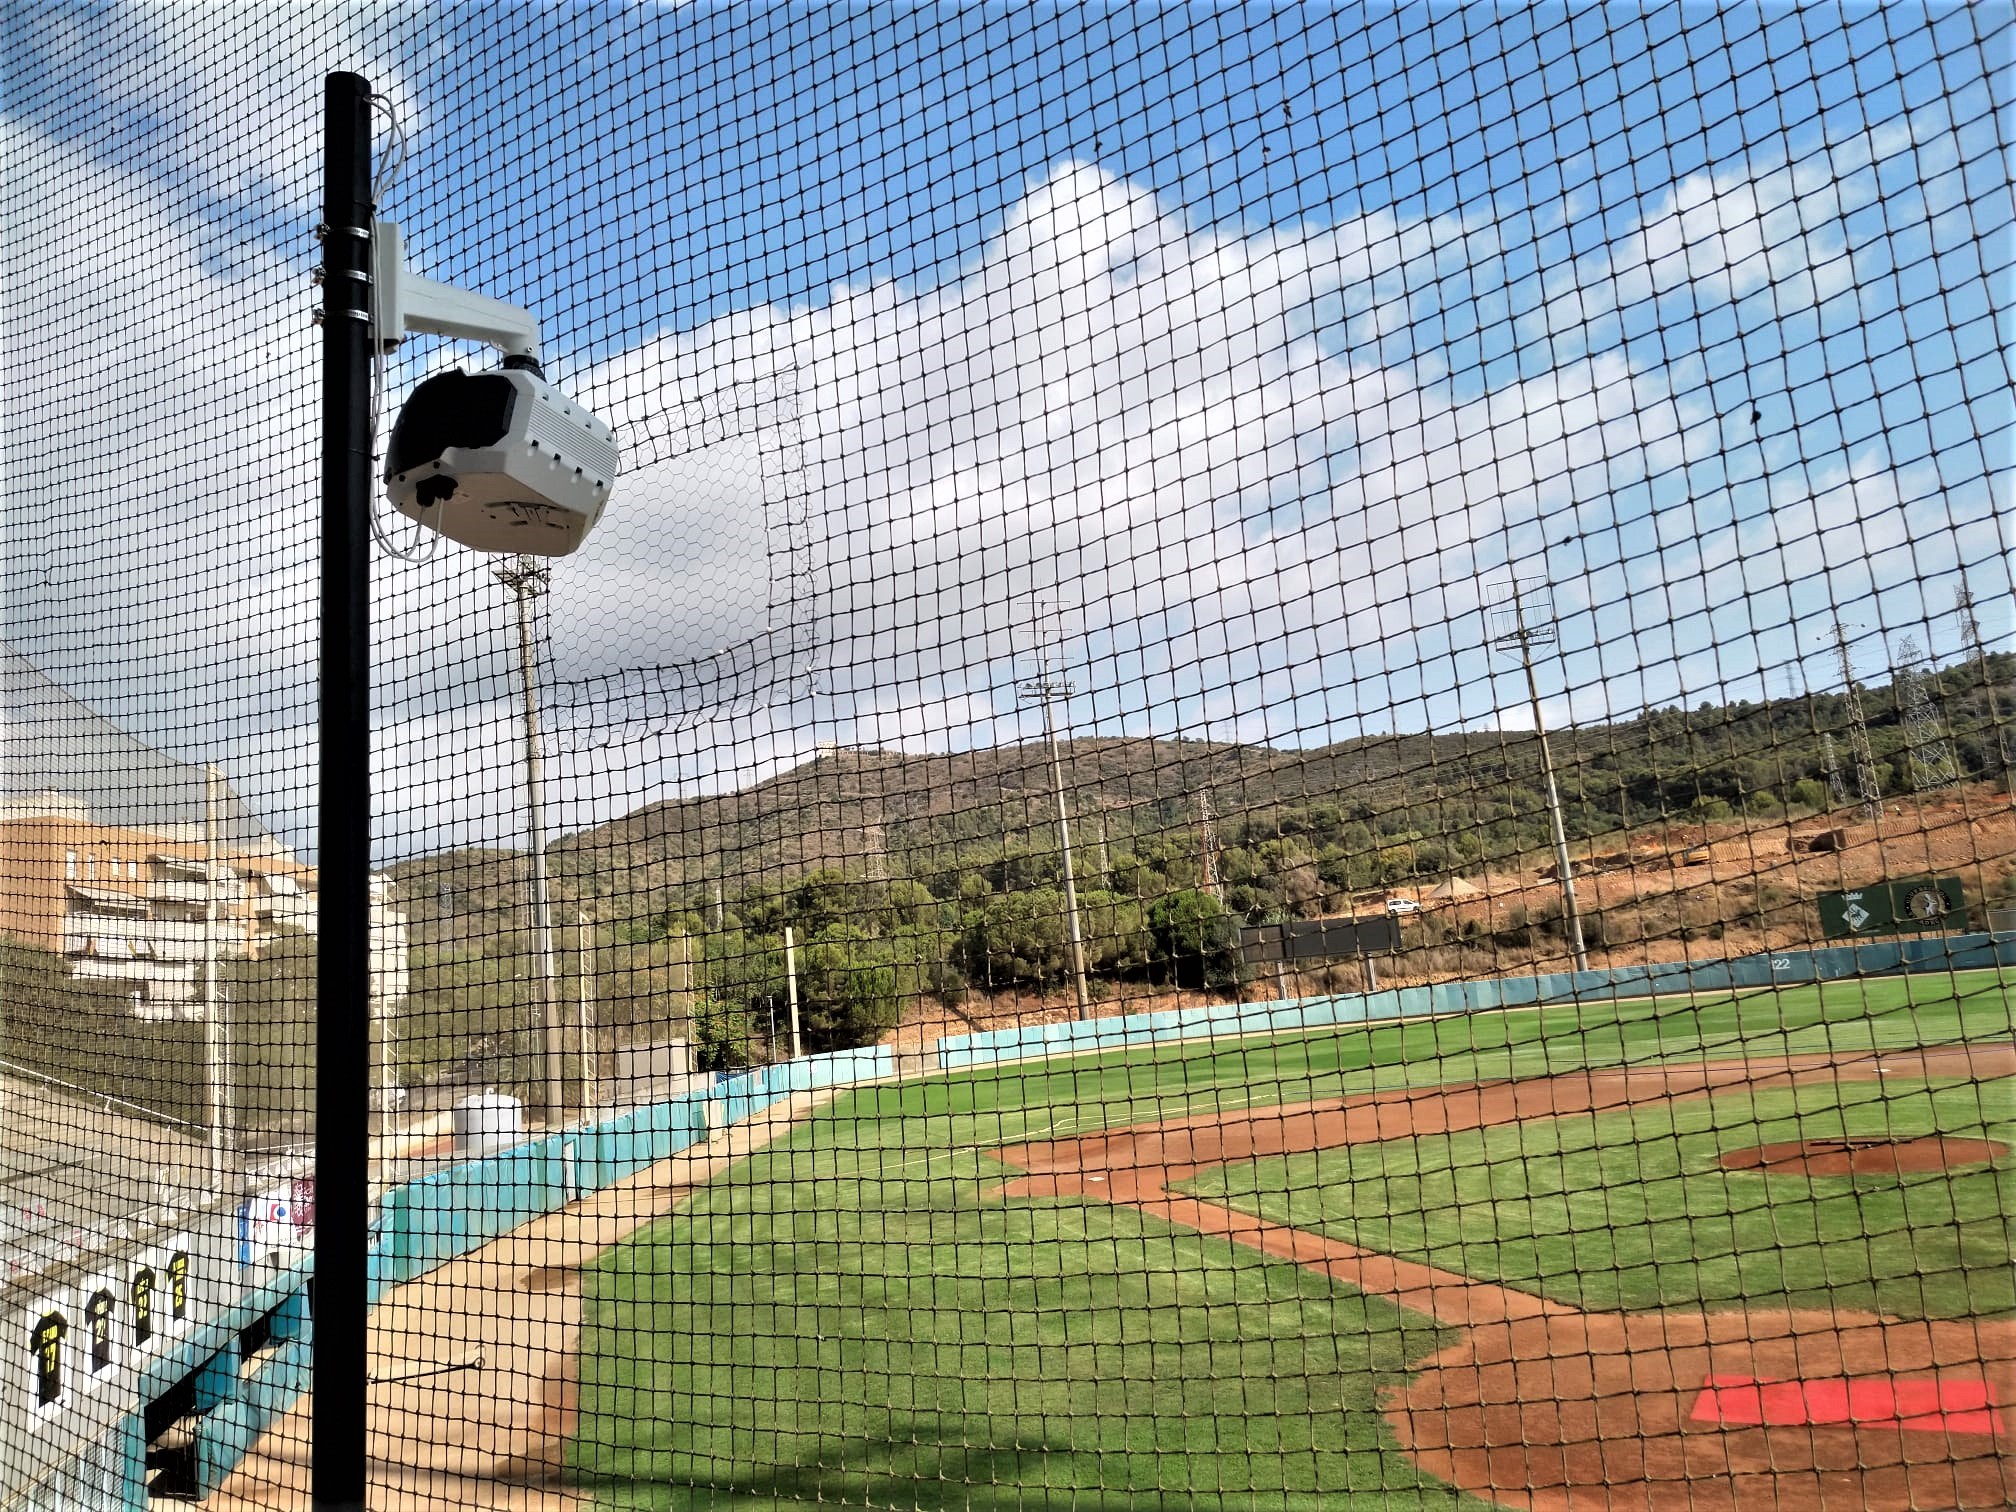 La cámara de ATM Media, en un campo de béisbol.